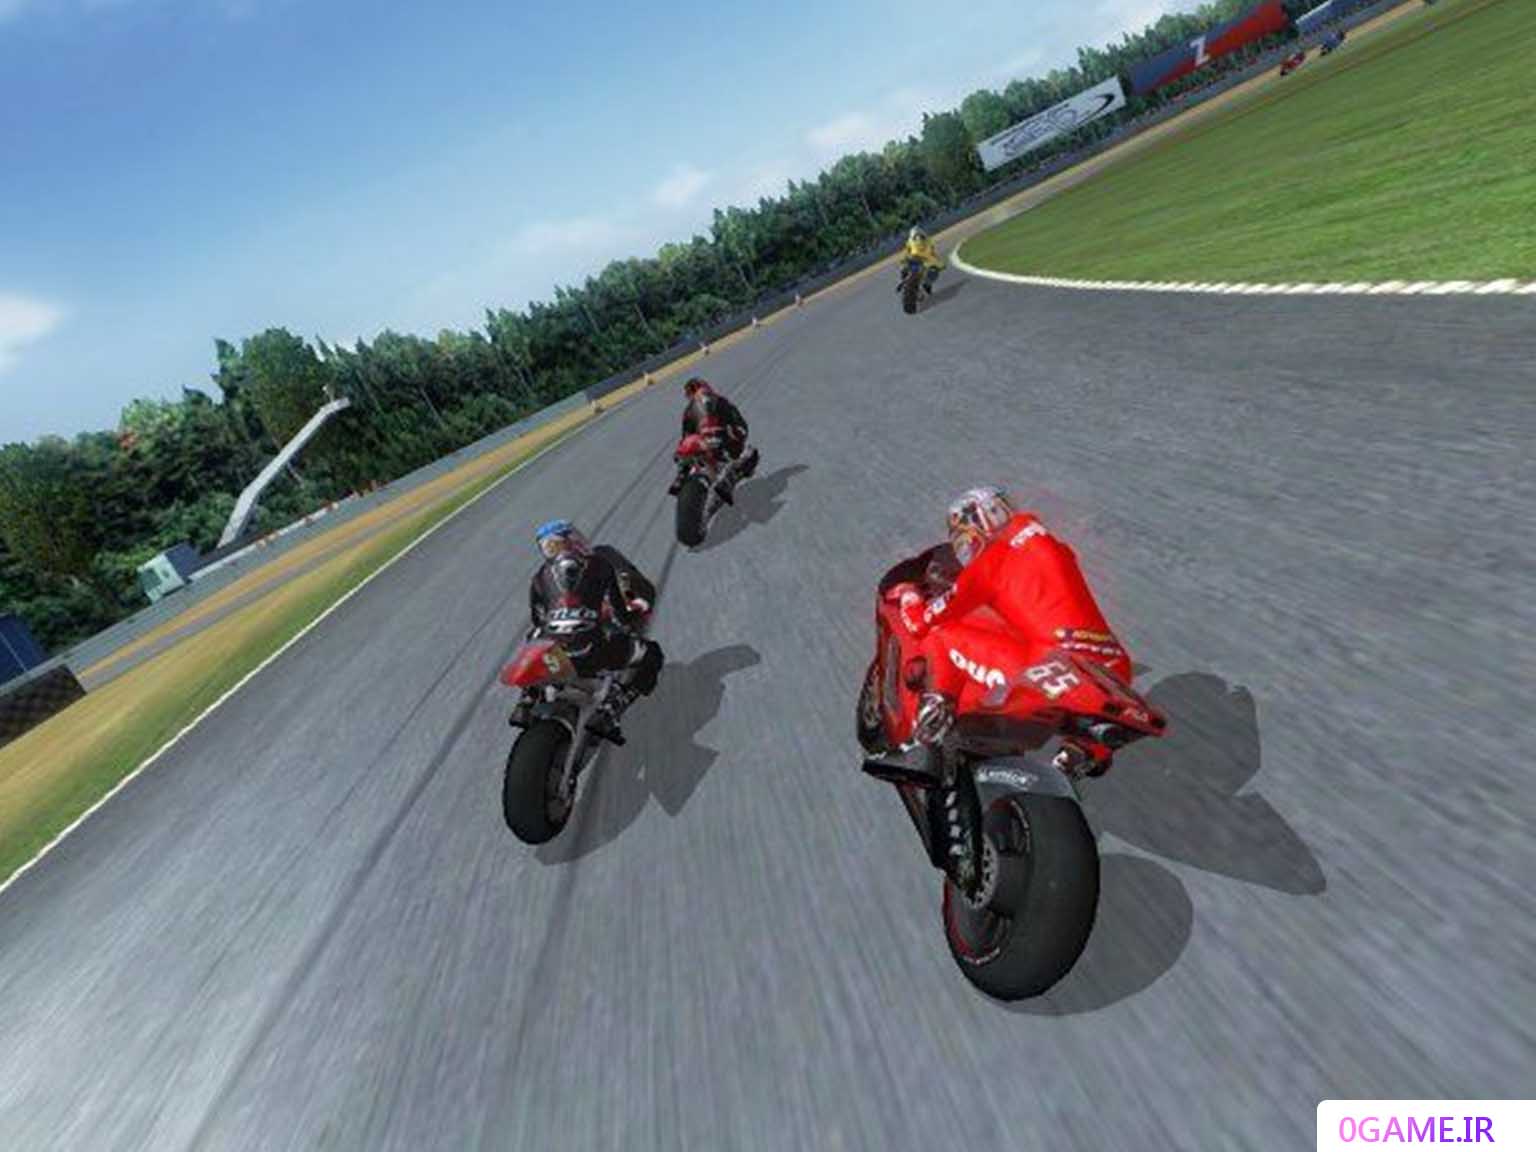 دانلود بازی موتور جی پی 3 (MotoGP) نسخه کامل برای کامپیوتر